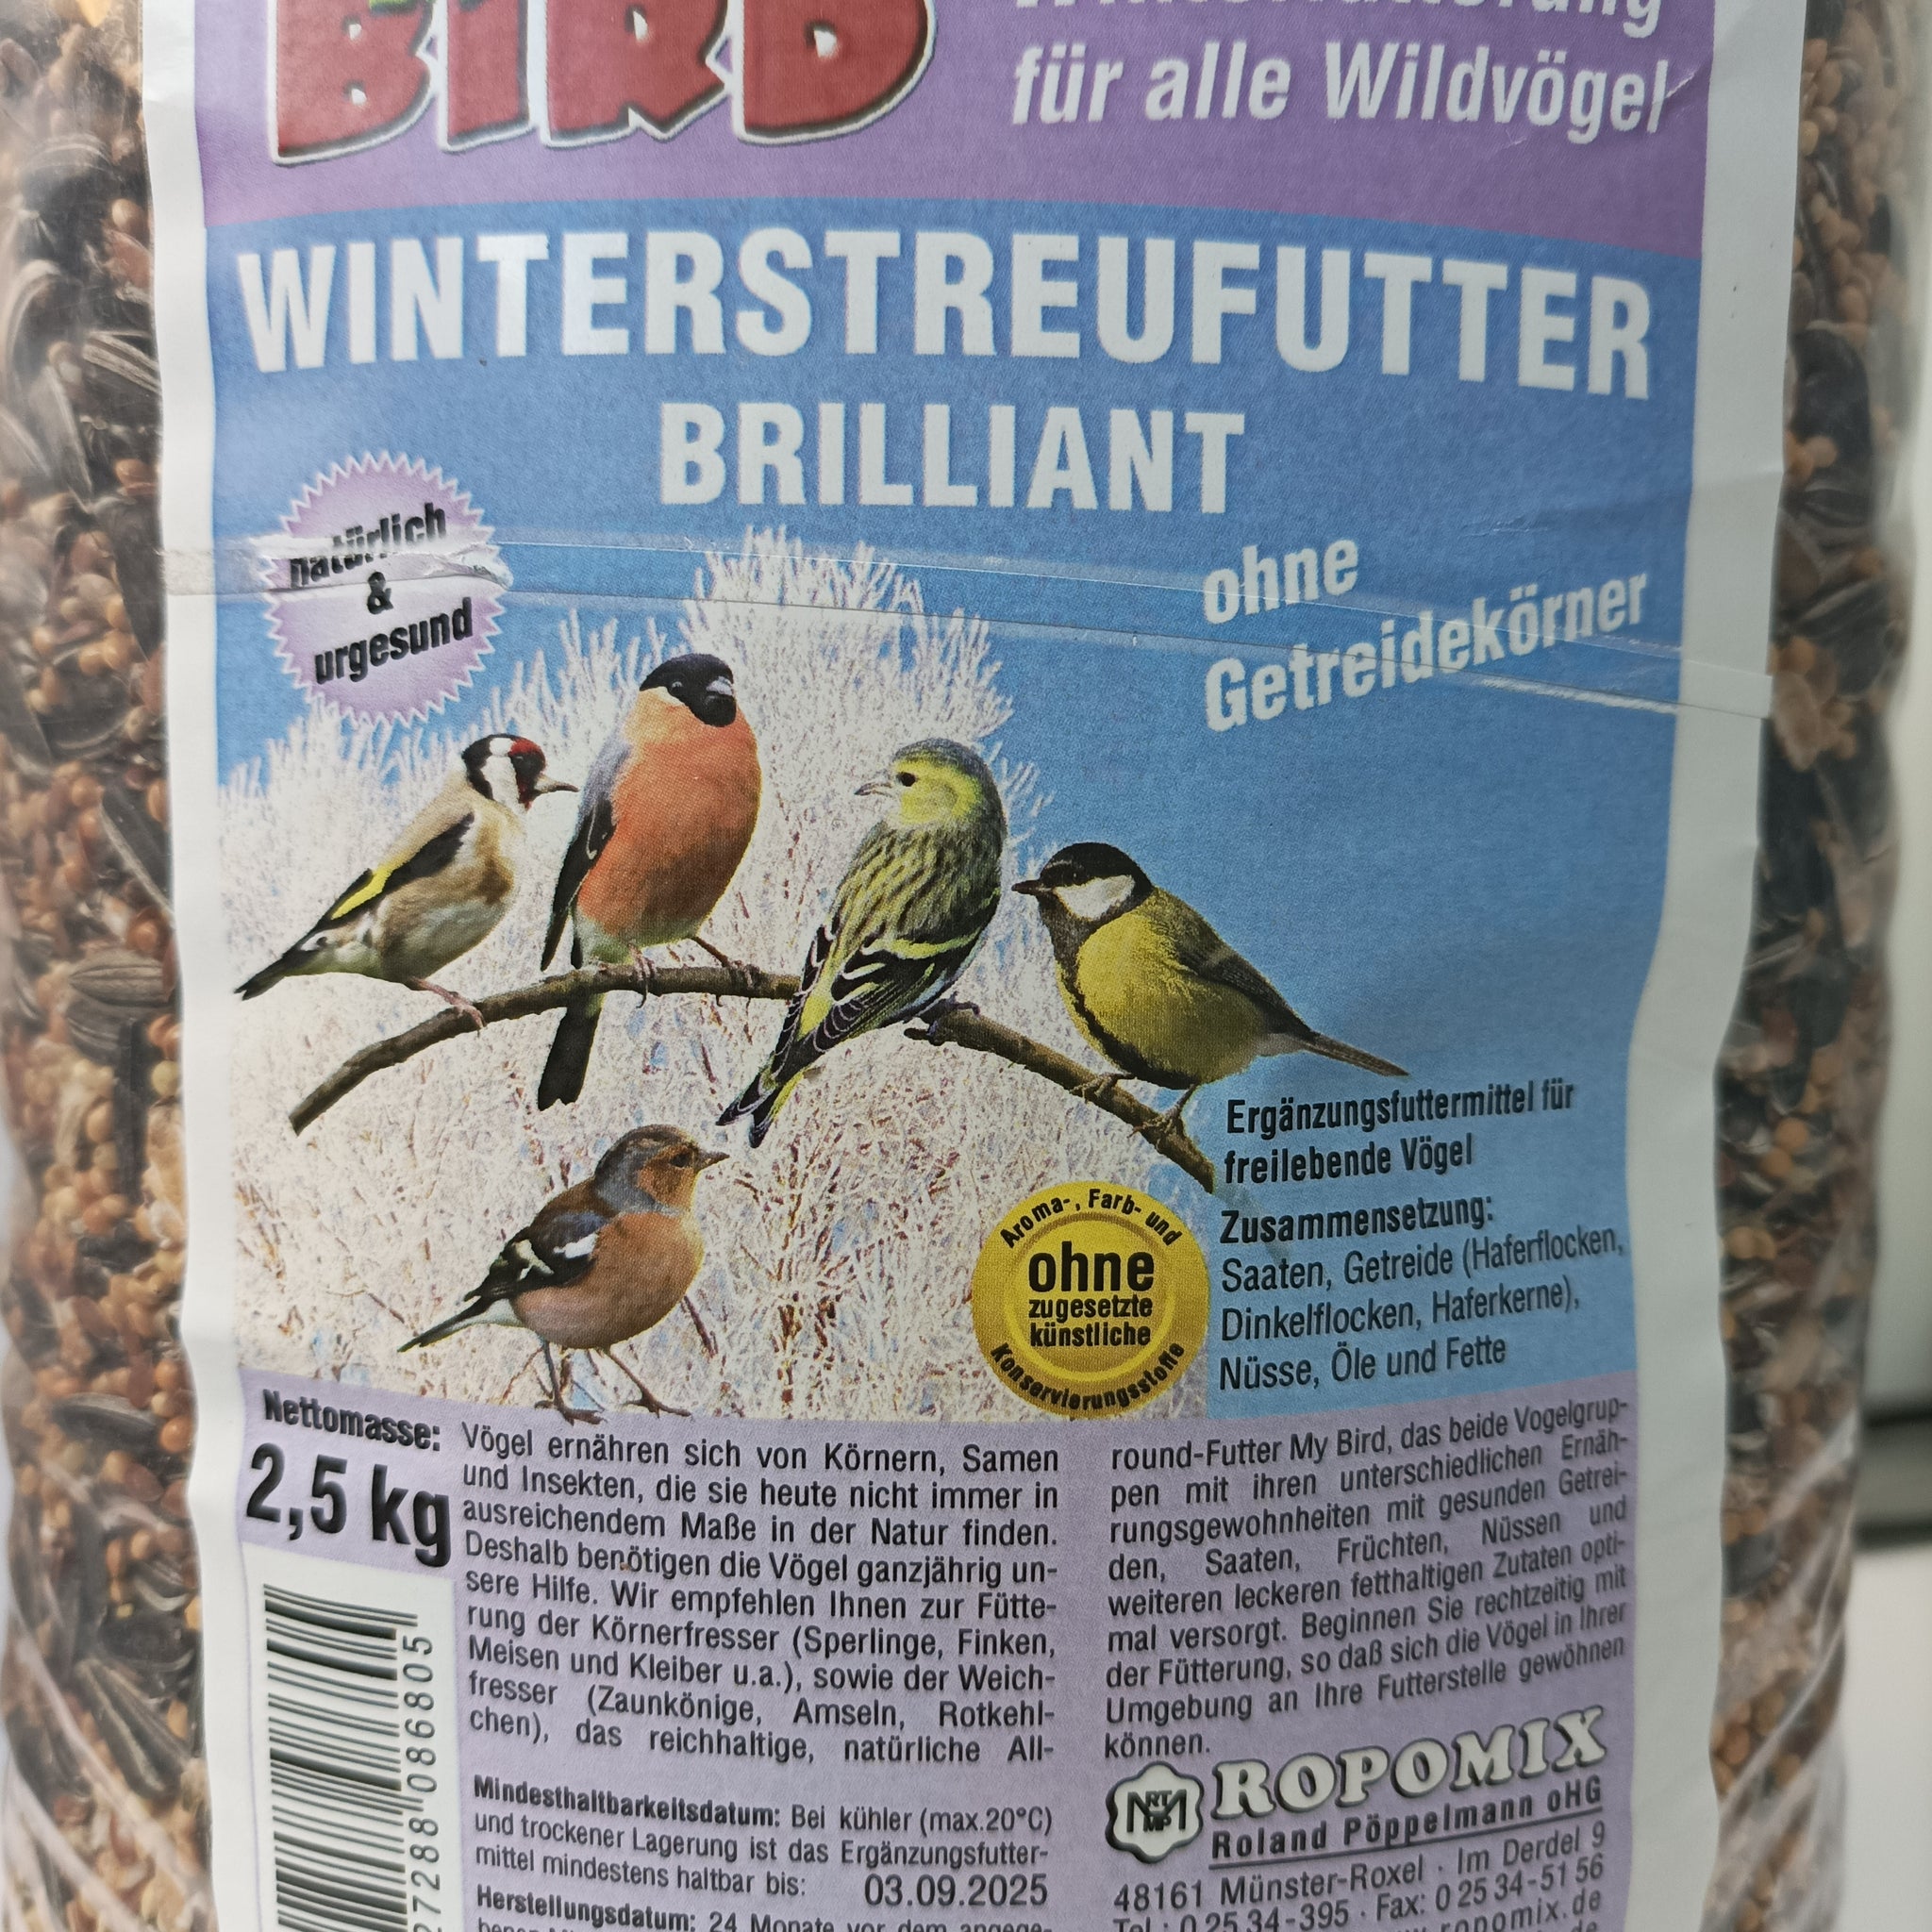 MyBird Winterstreufutter Brilliant ohne Getreidekörner